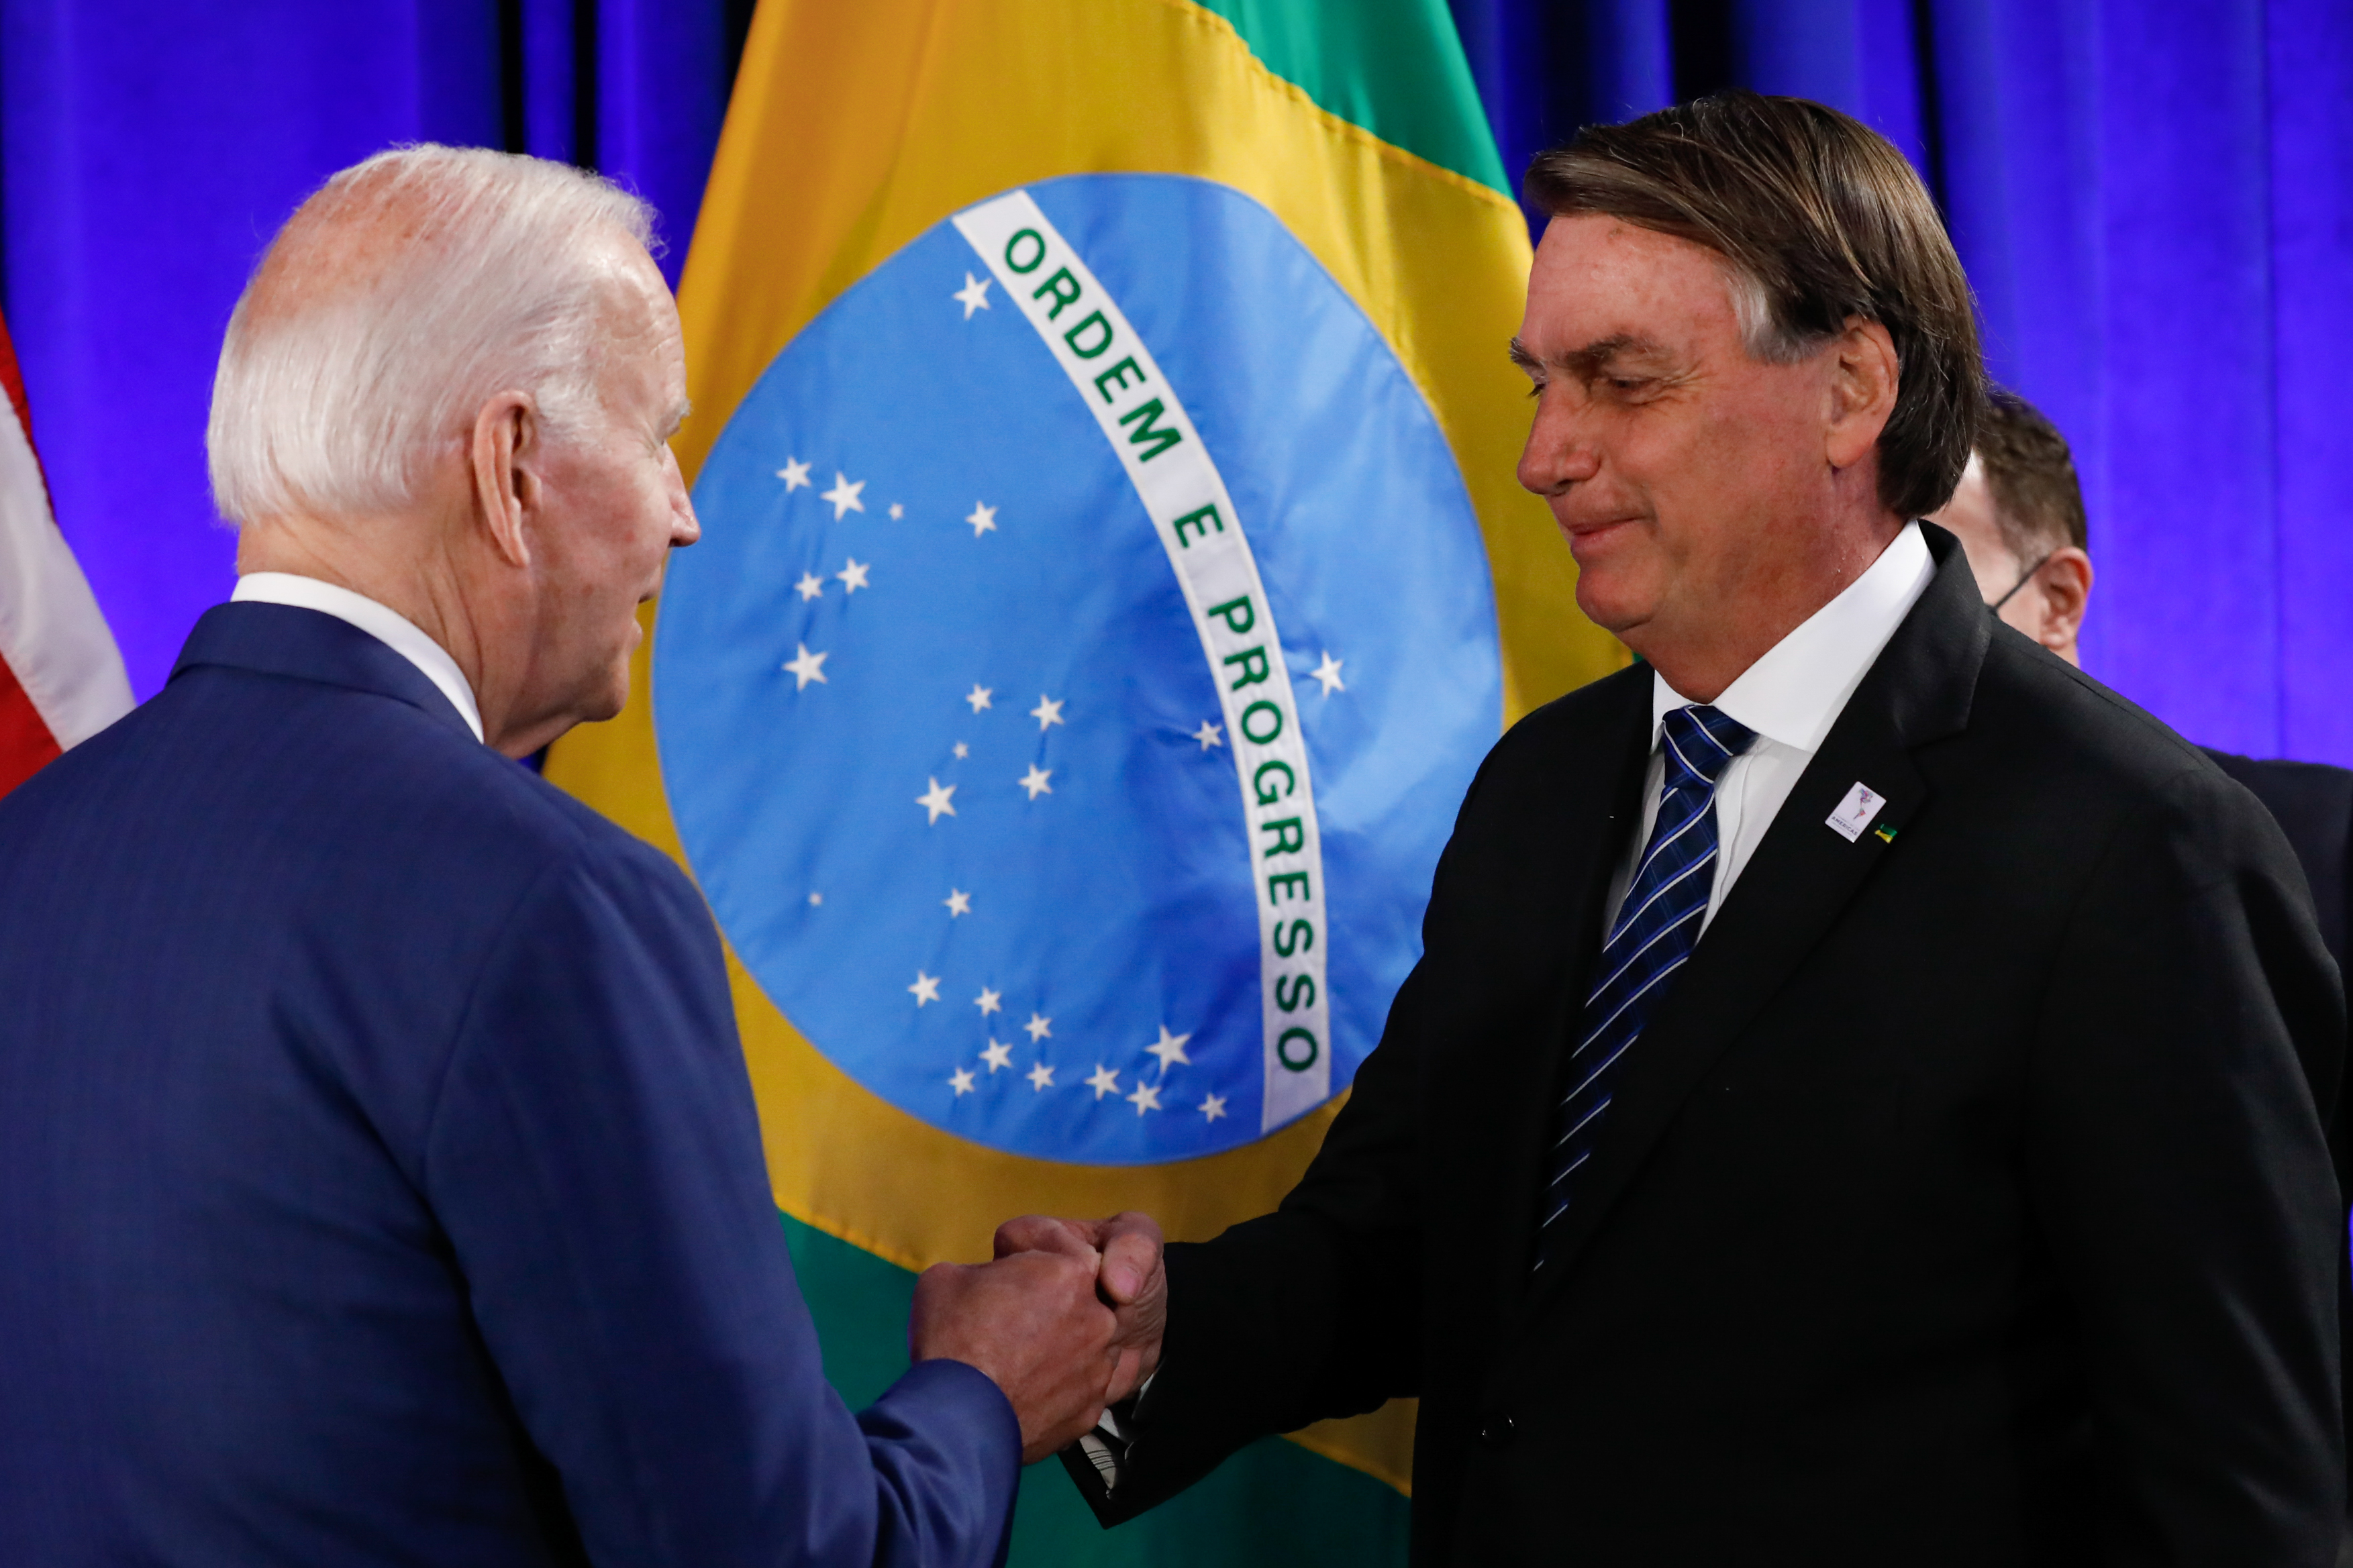 O que surpreendeu no encontro entre Bolsonaro e Biden | VEJA